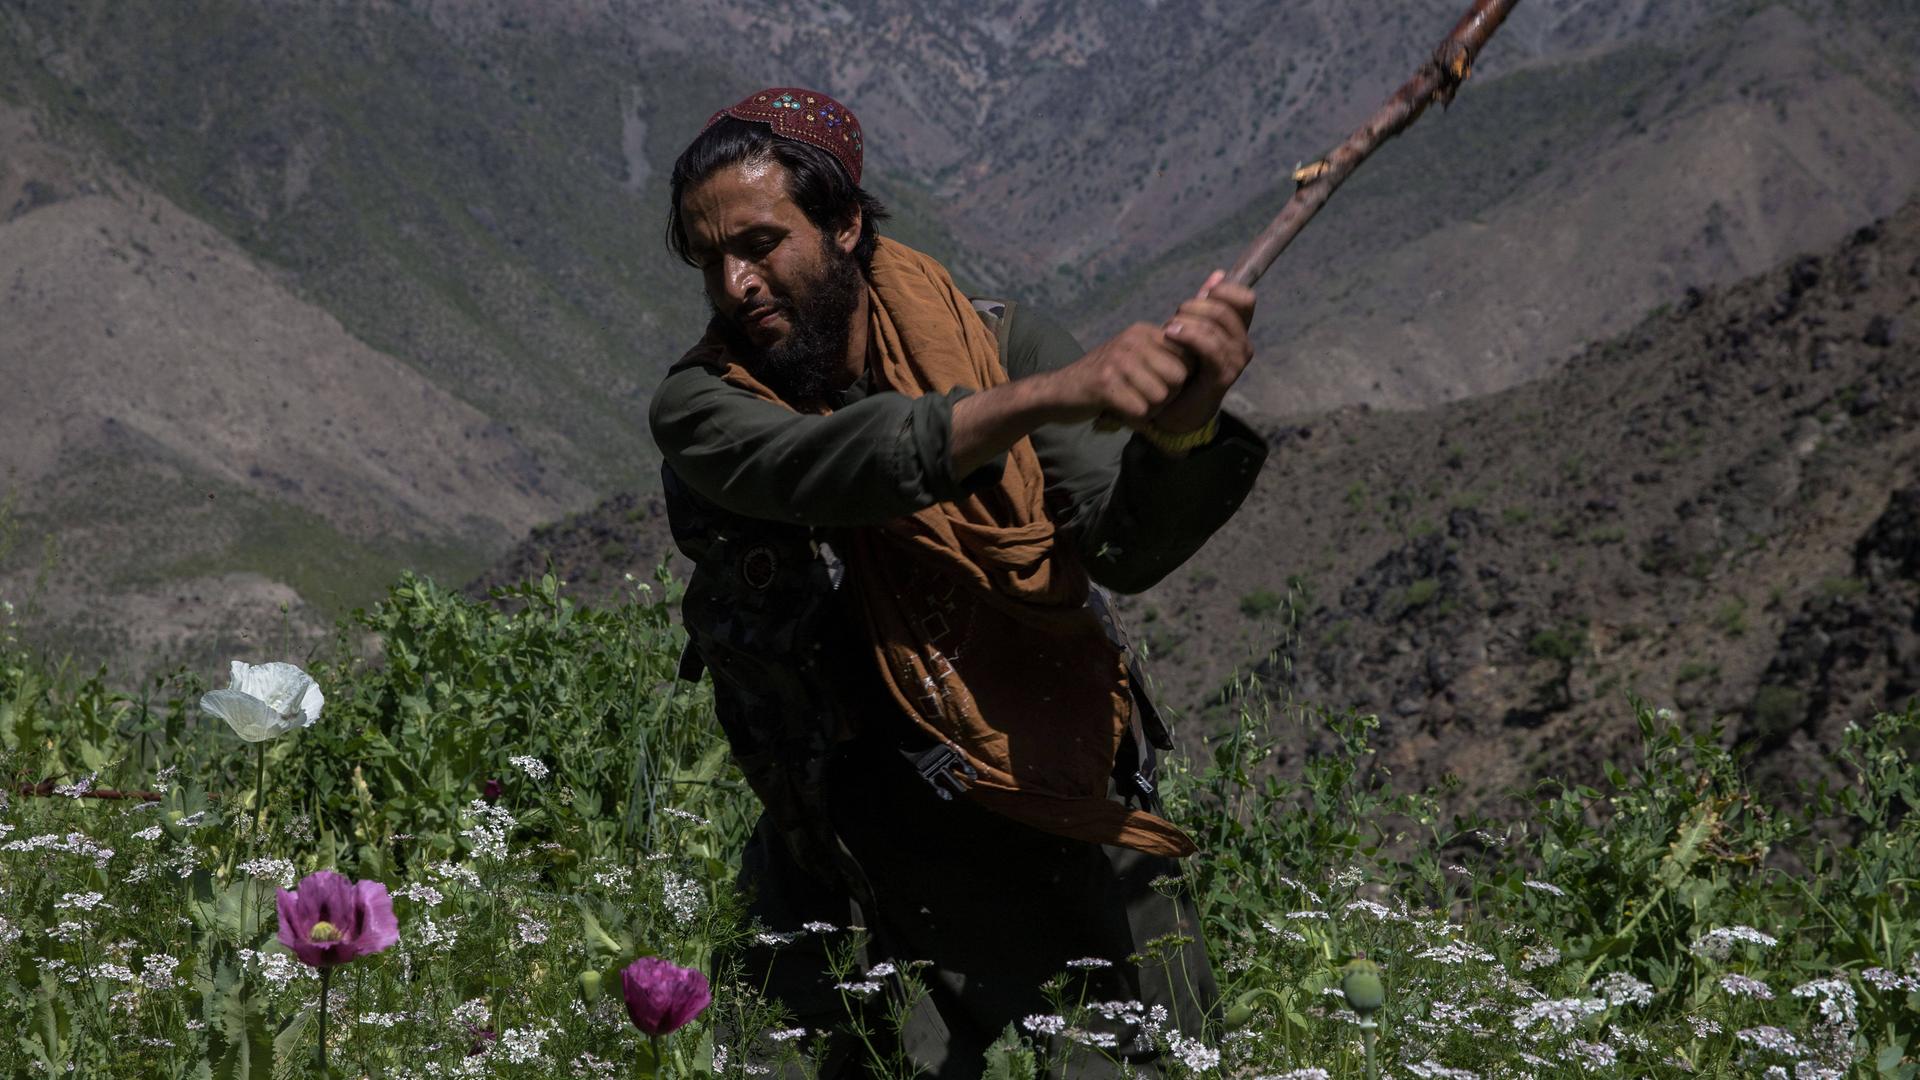 Ein Mann mit Bart - es ist ein Taliban - zerstört mit einem Stock Mohnpflanzen.